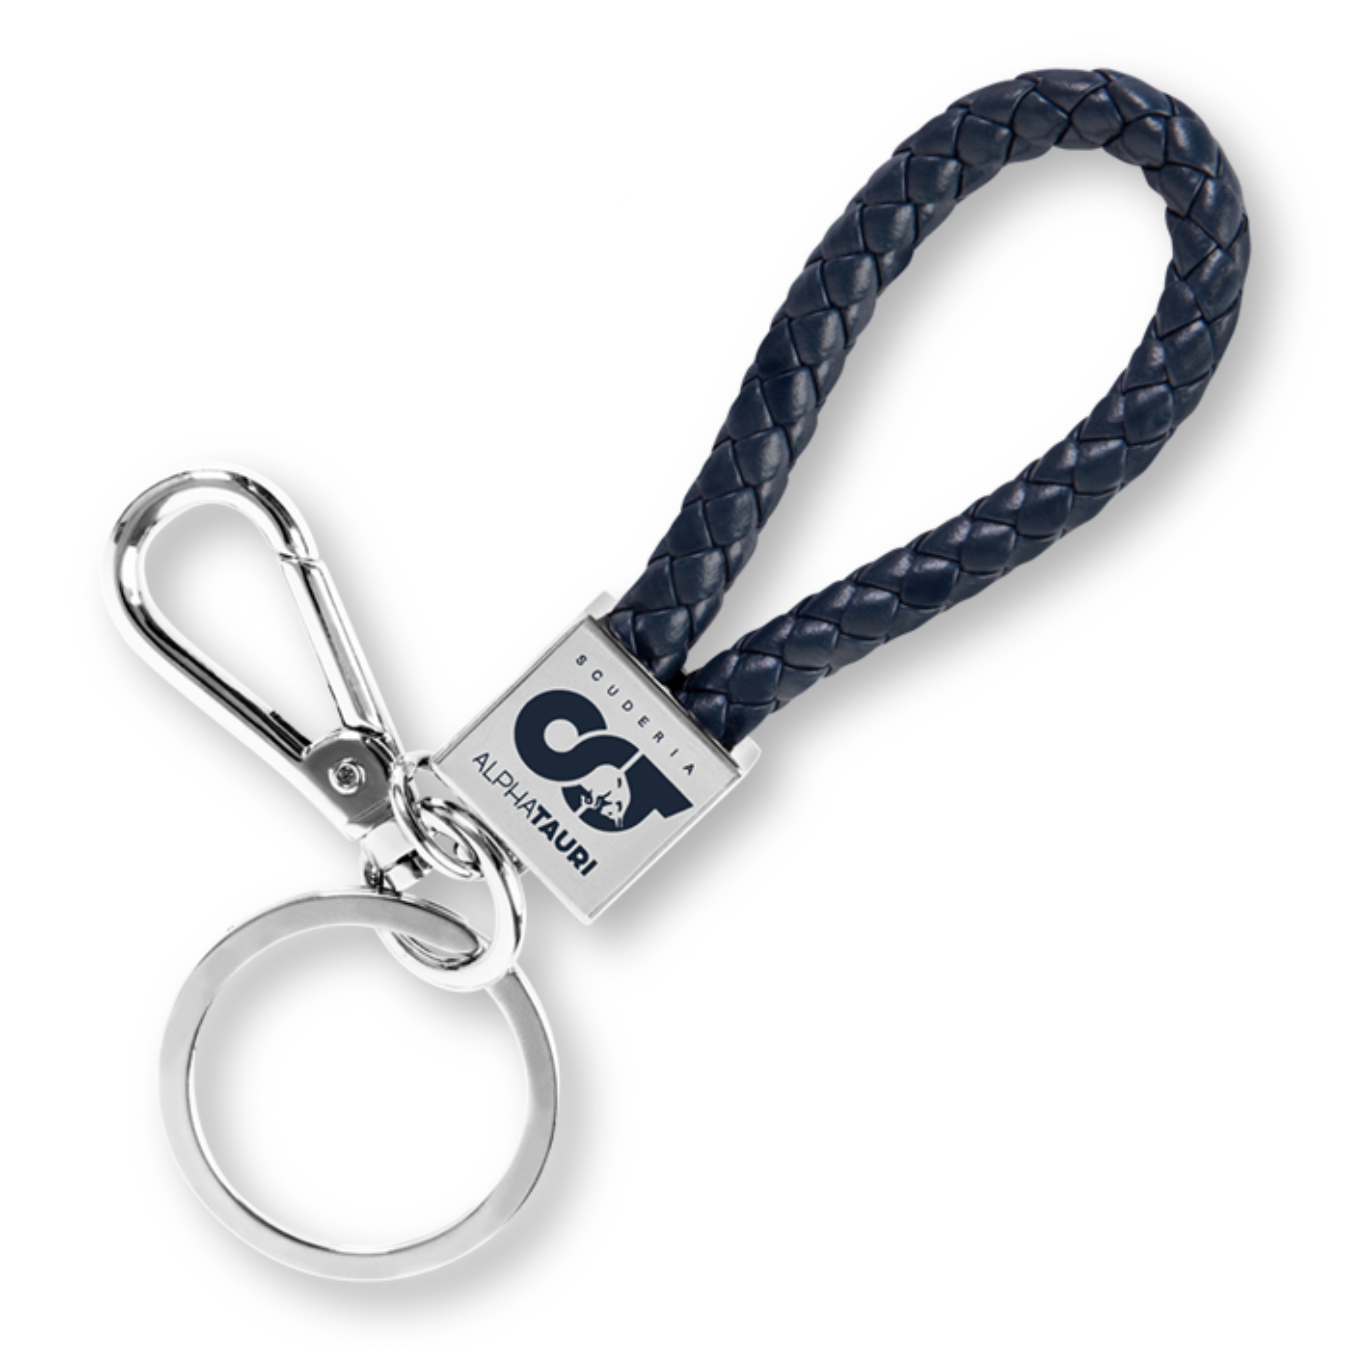 Porte-clés en caoutchouc avec logo Ktm